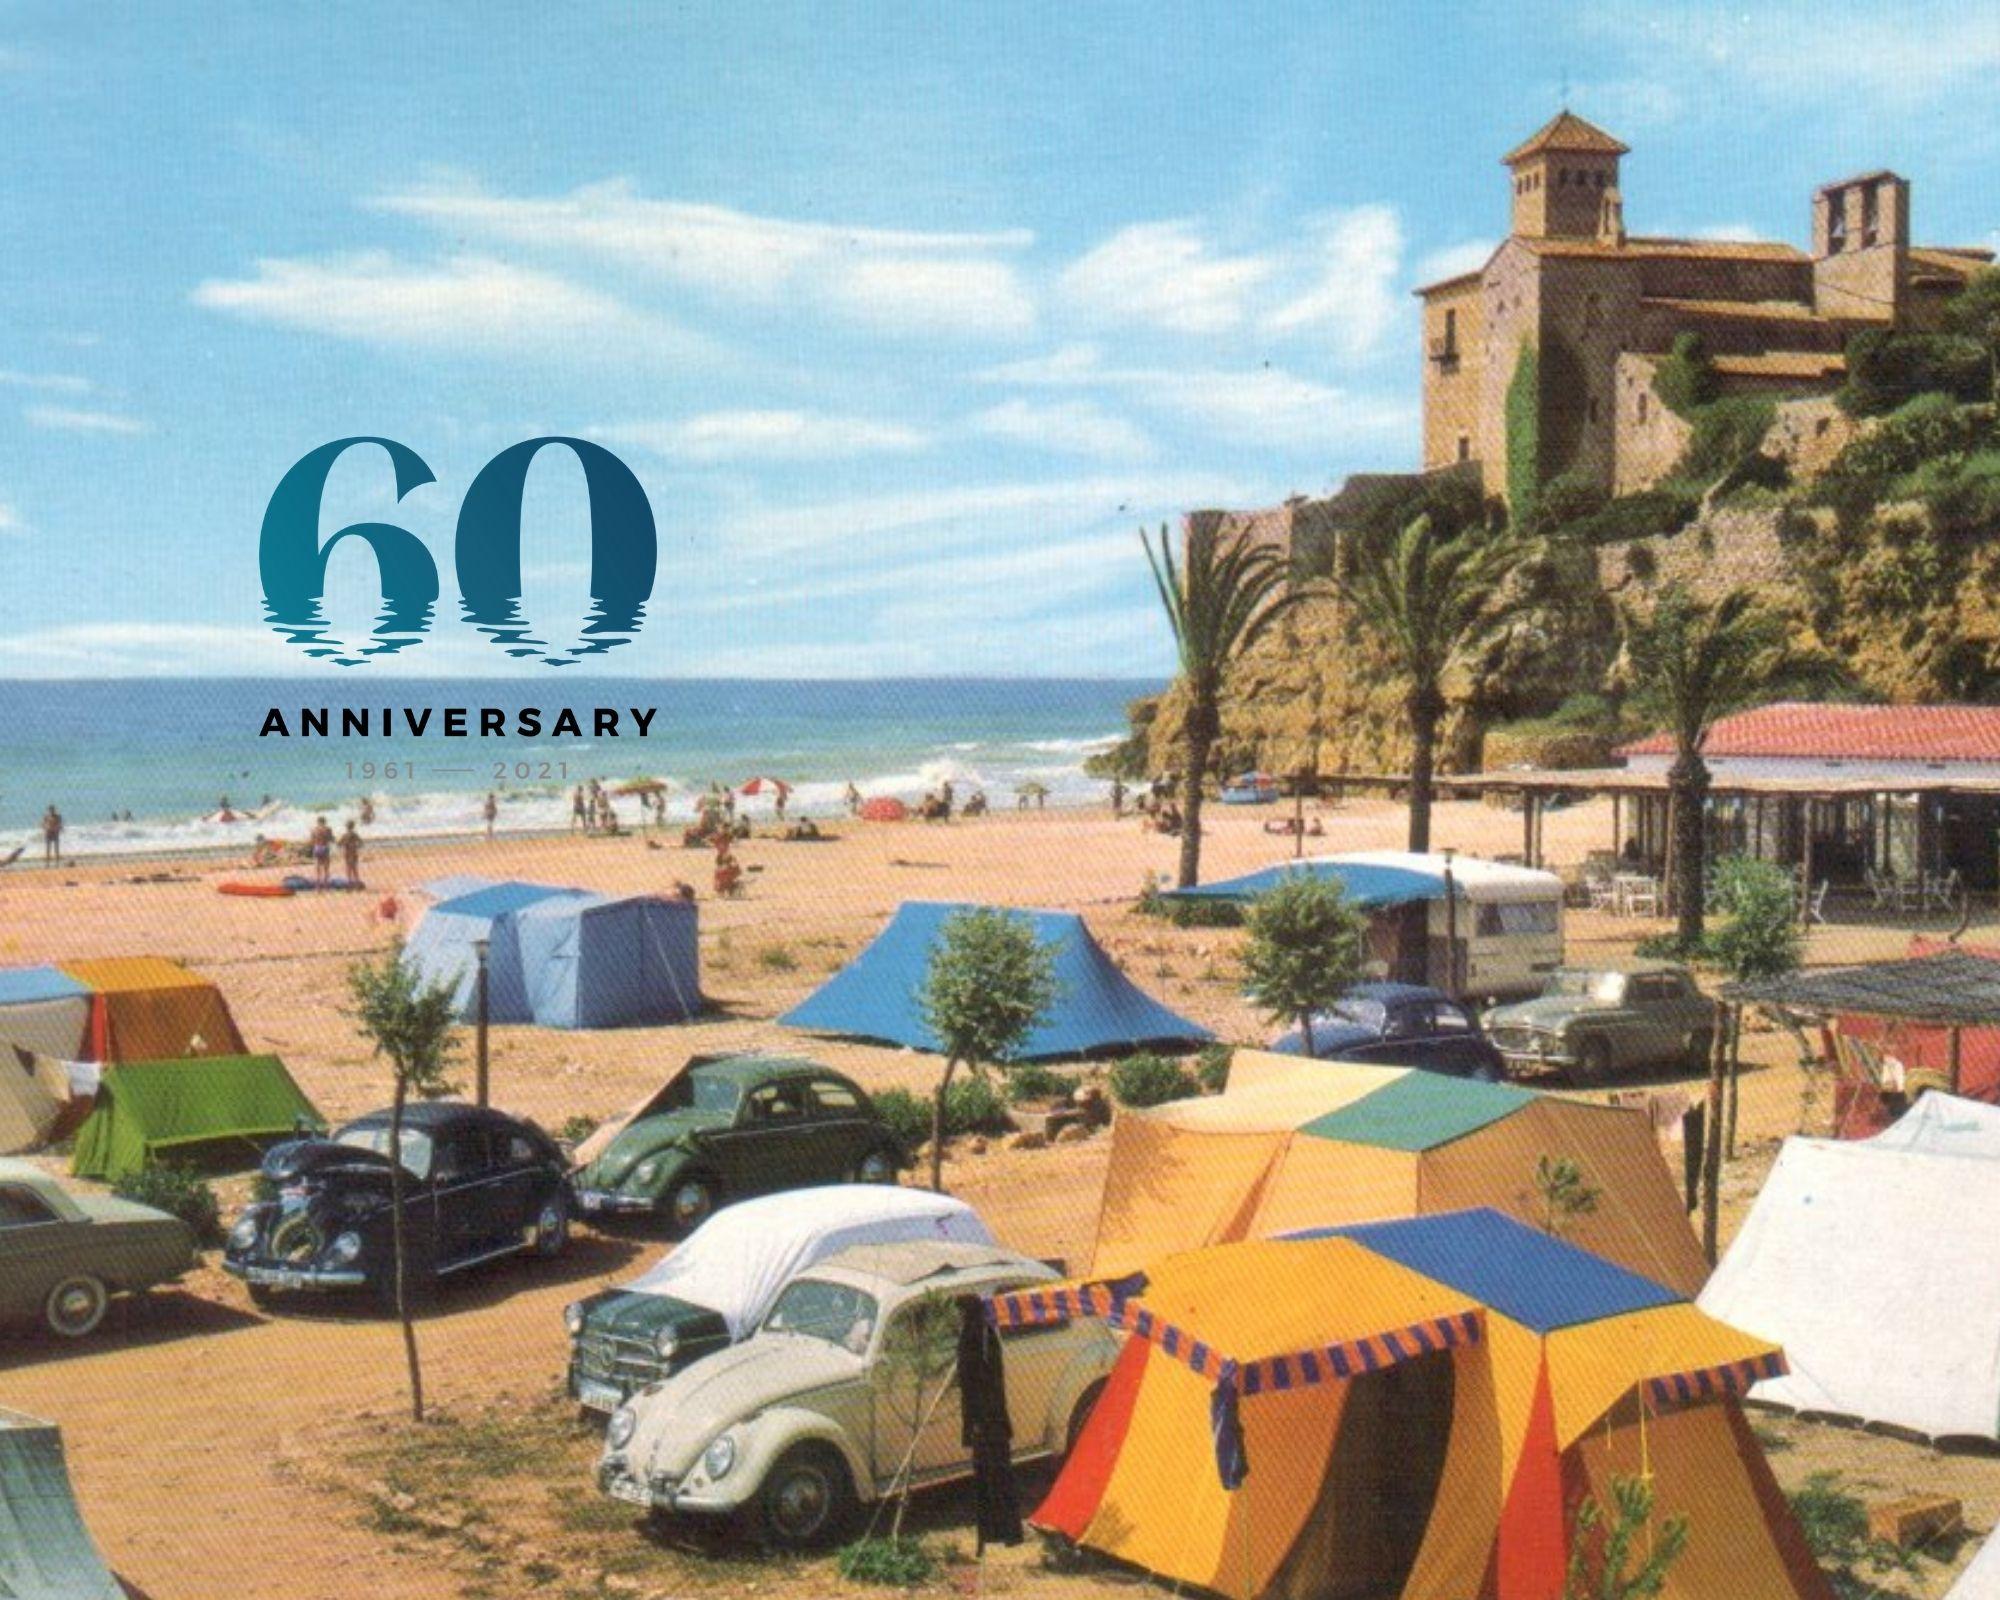 camping tamarit beach resort 24947 1961 - 2021 60 años de historia